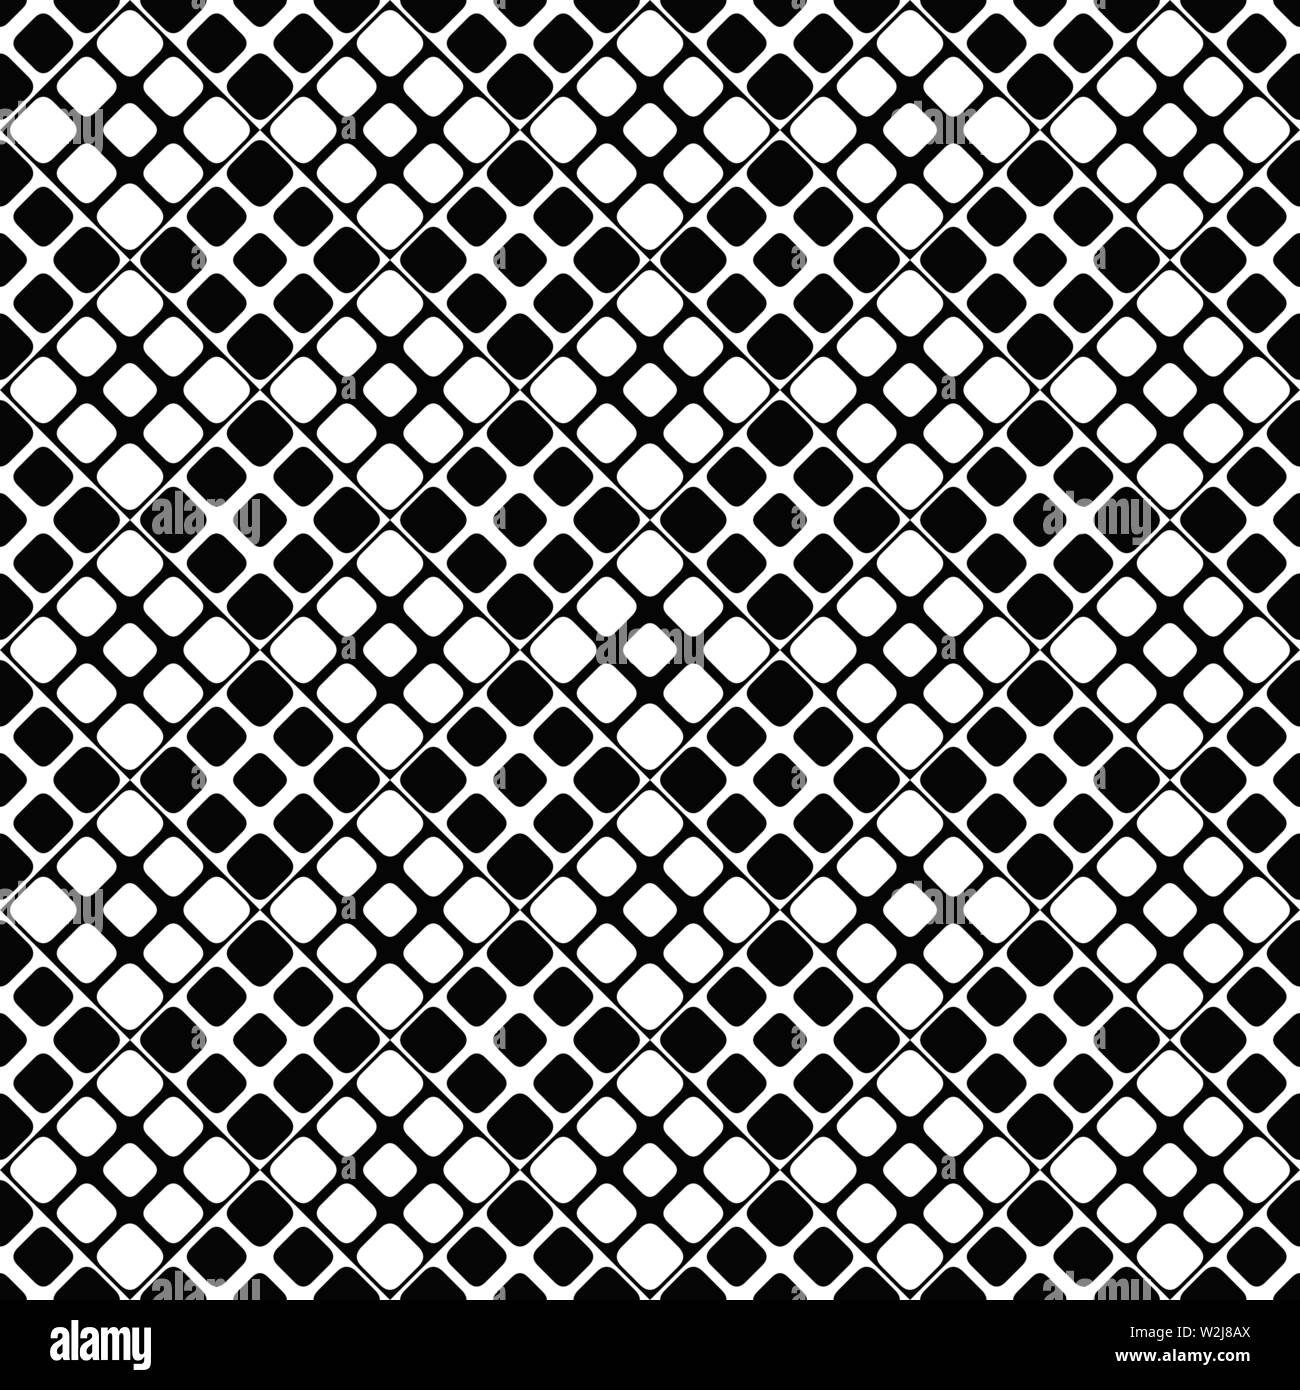 Zusammenfassung nahtlose schwarze und weiße Quadrat mit abgerundeten Ecken Muster Hintergrund - monochrom Vector Graphic Design Stock Vektor